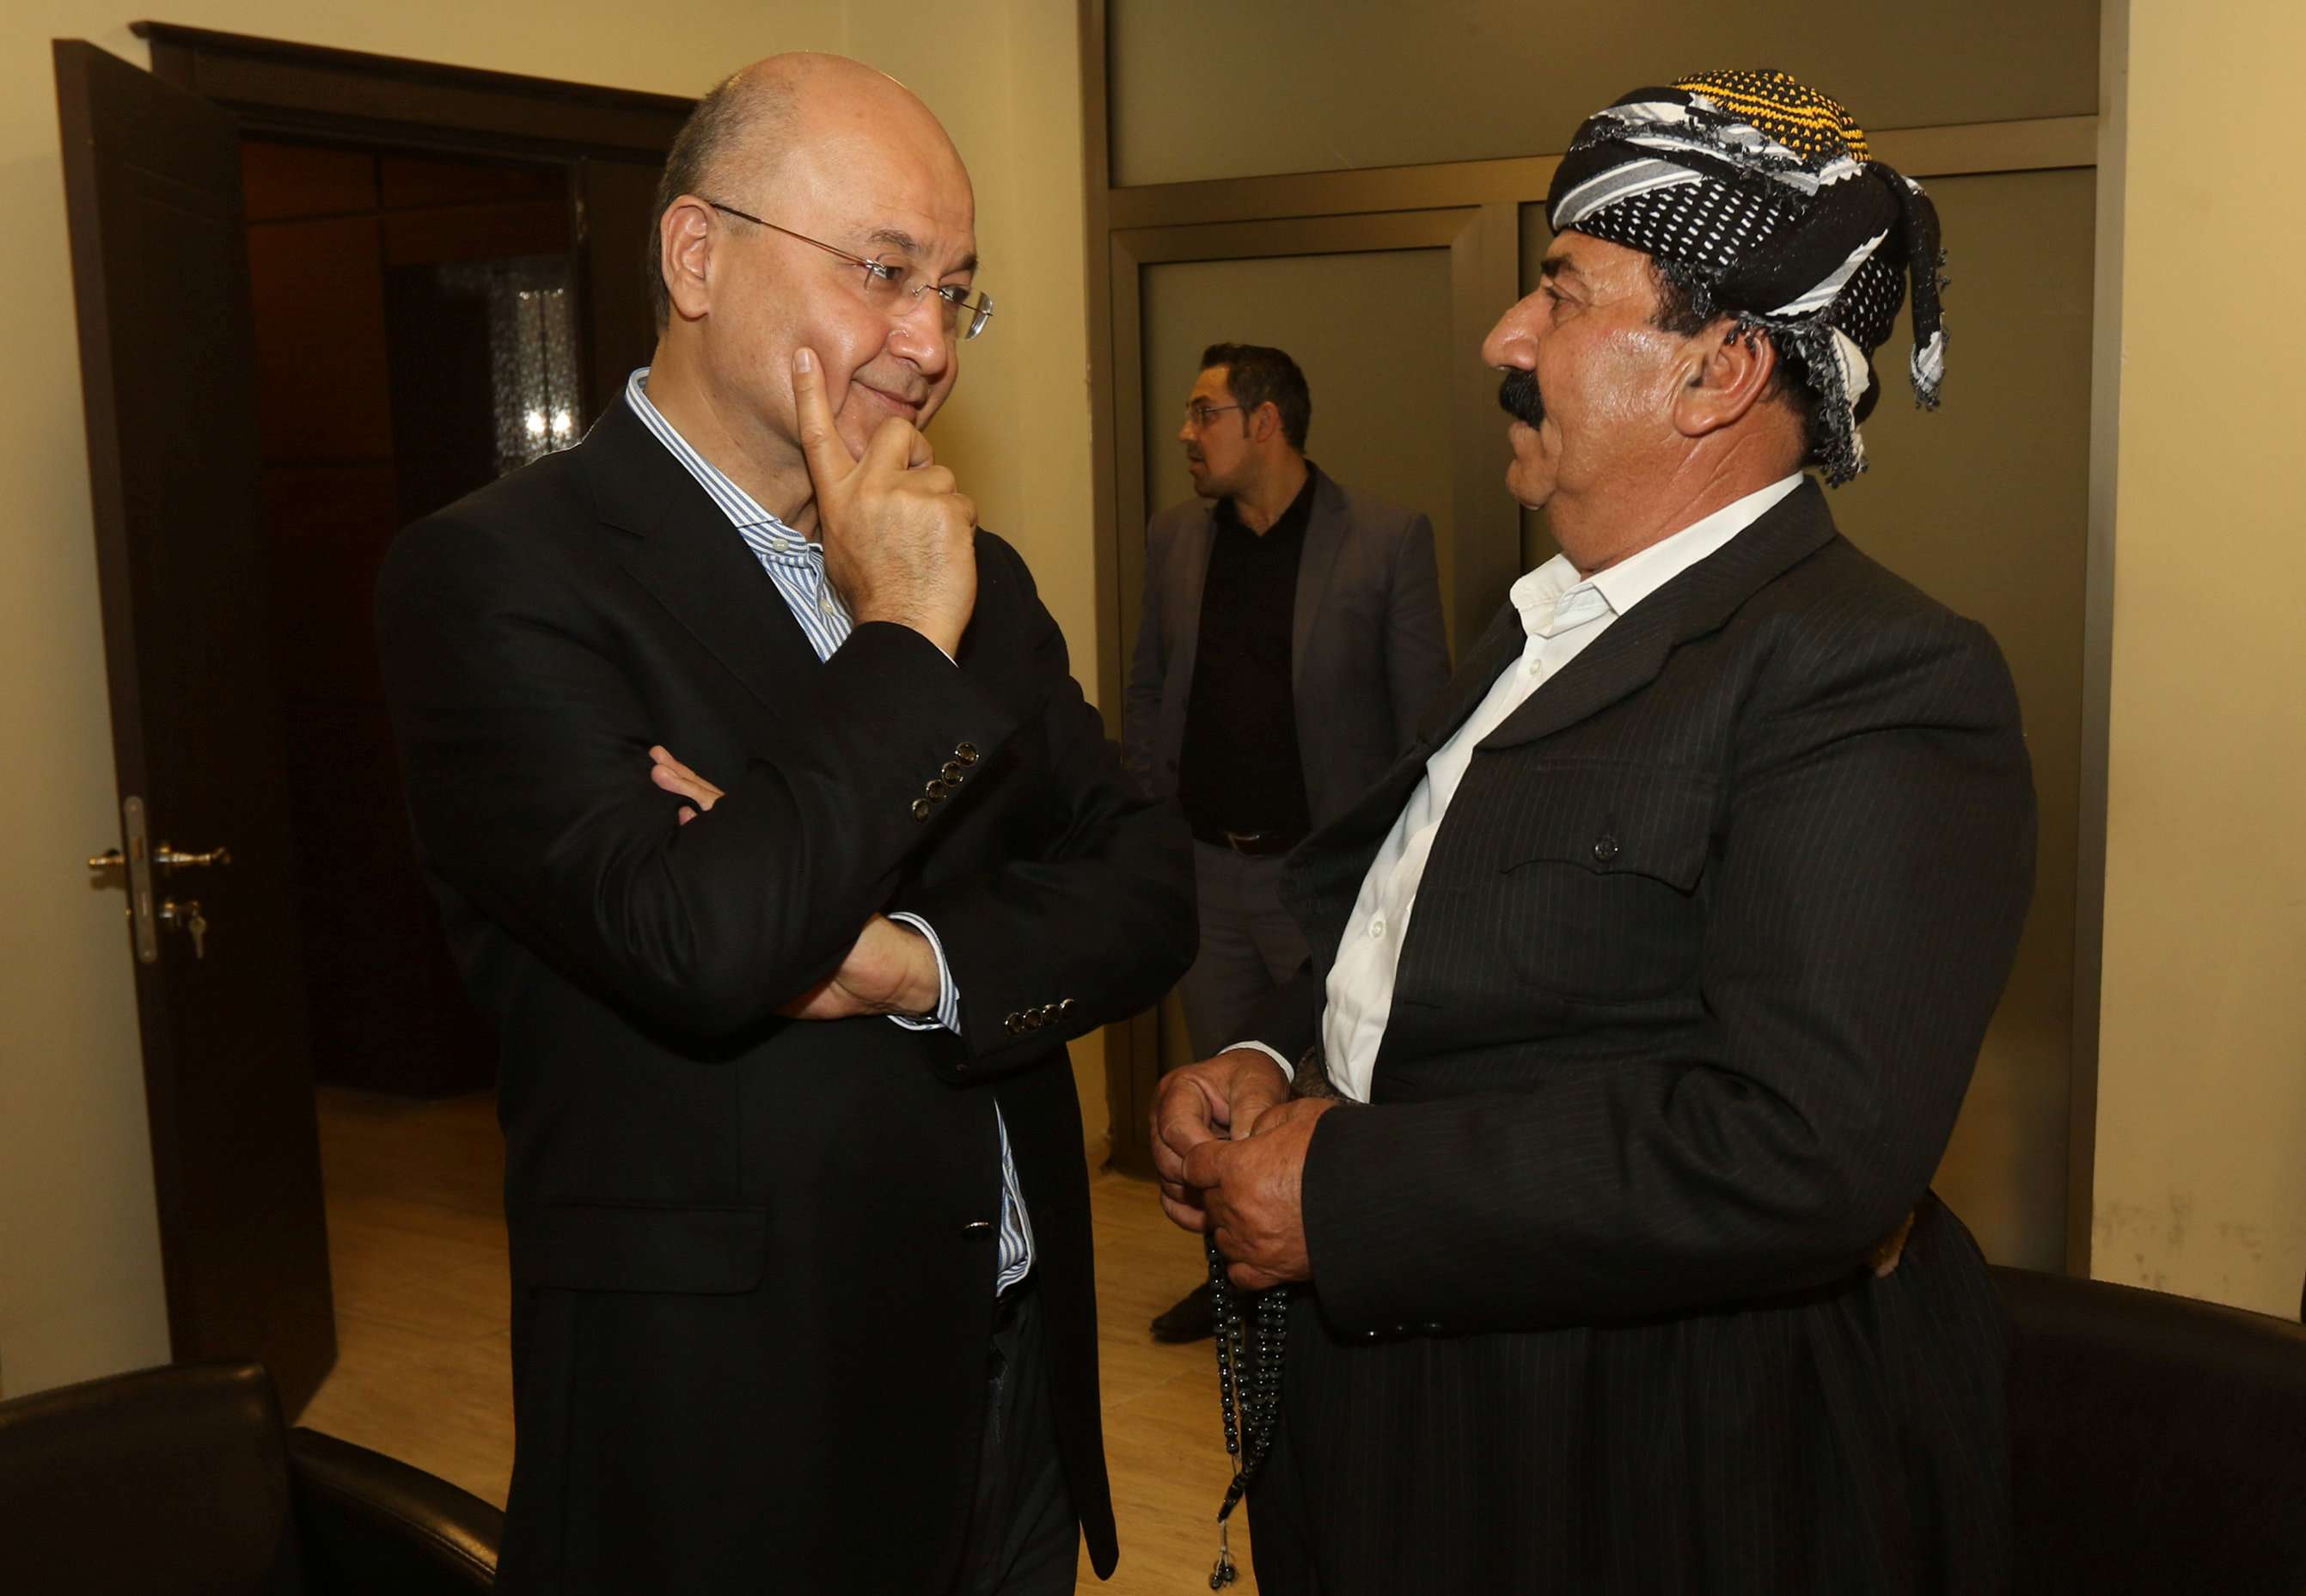 رئيس وزراء حكومة كردستان السابق برهم صالح في حوار مع أحد الزعماء الأكراد في السليمانية